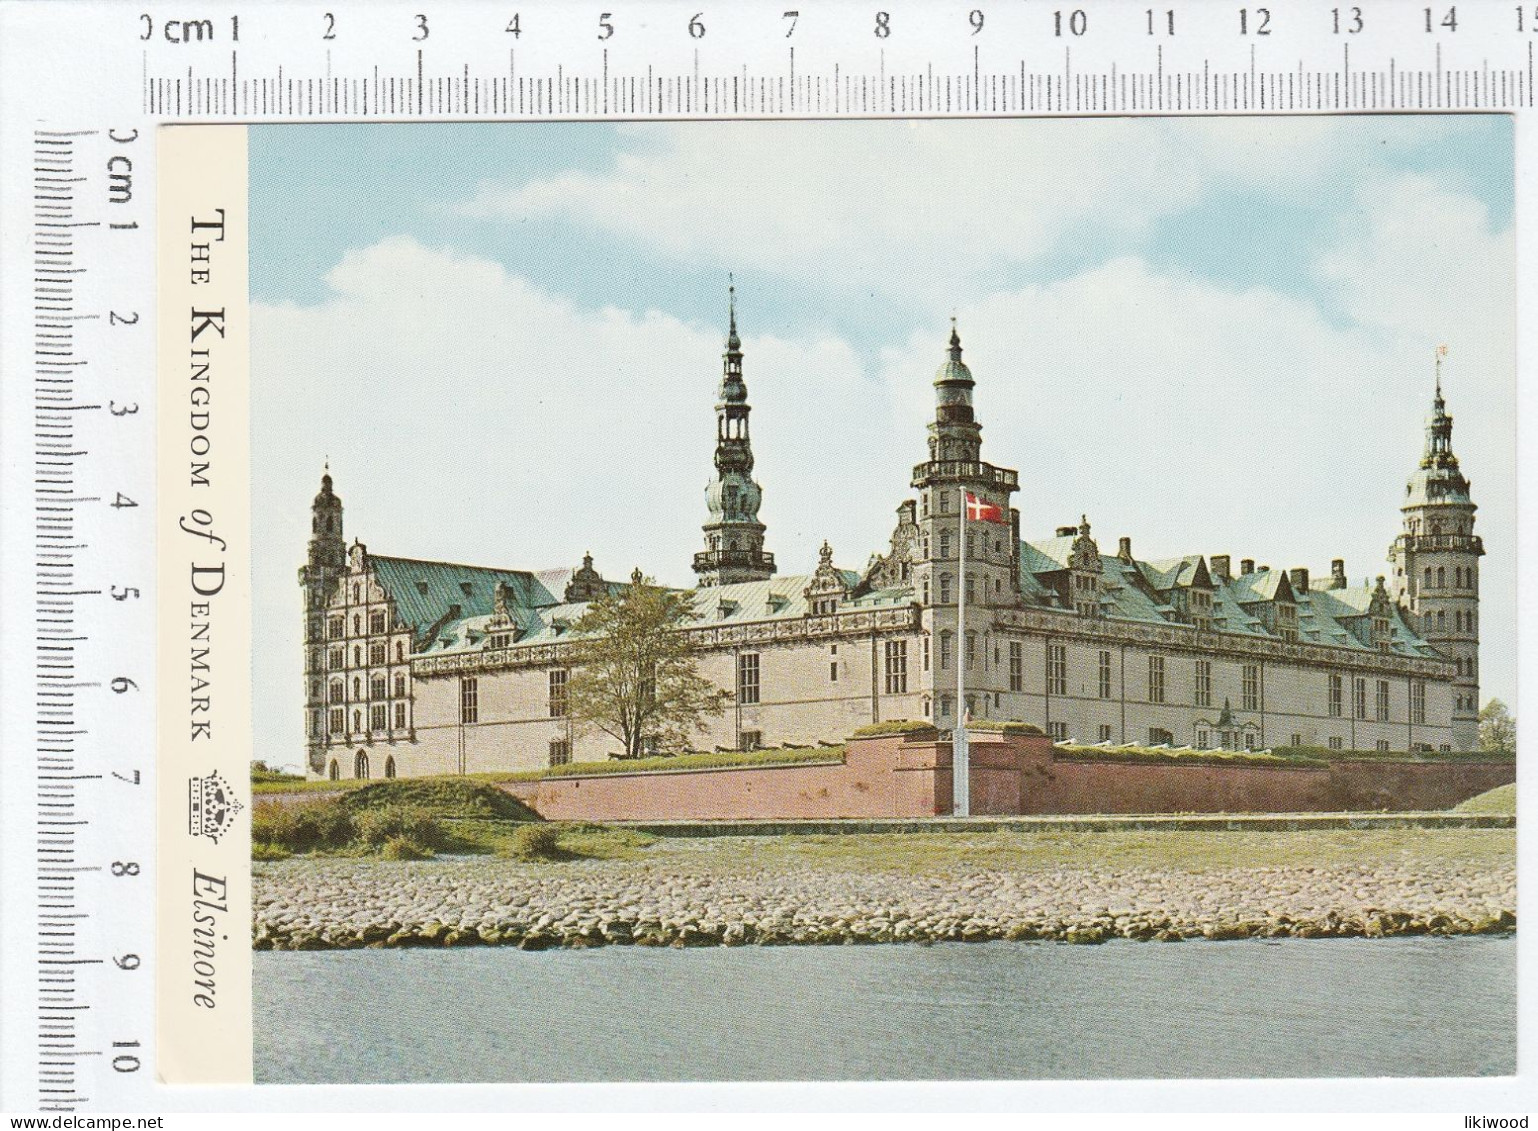 Kronborg Castle, Elsinore, Denmark - Danemark